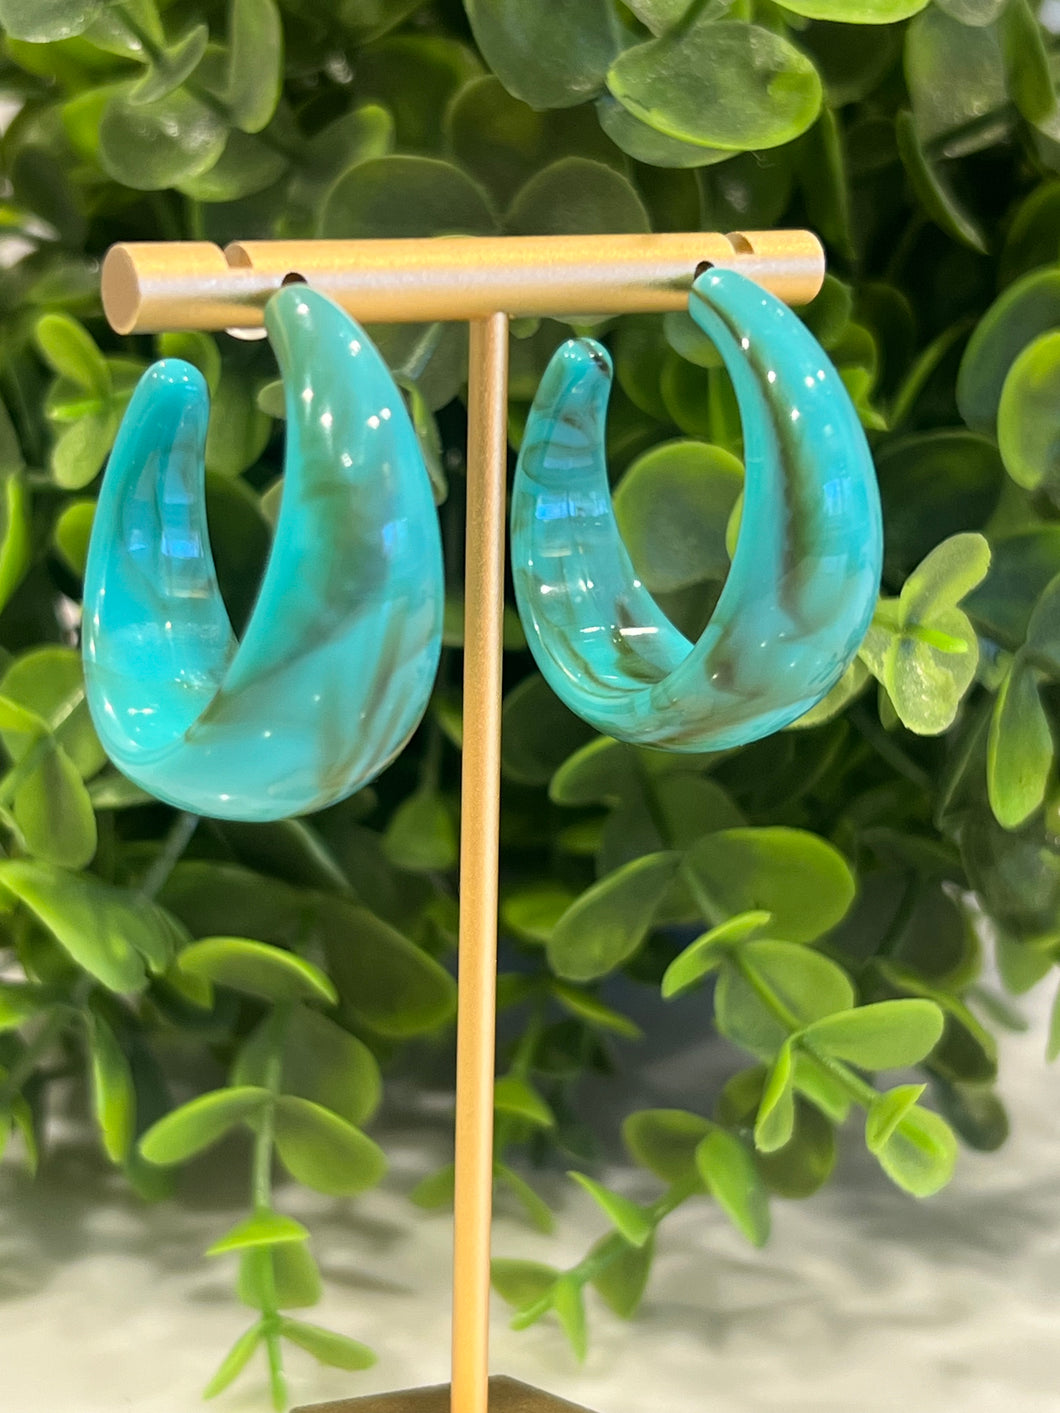 Turquoise Acrylic Hoop Earrings